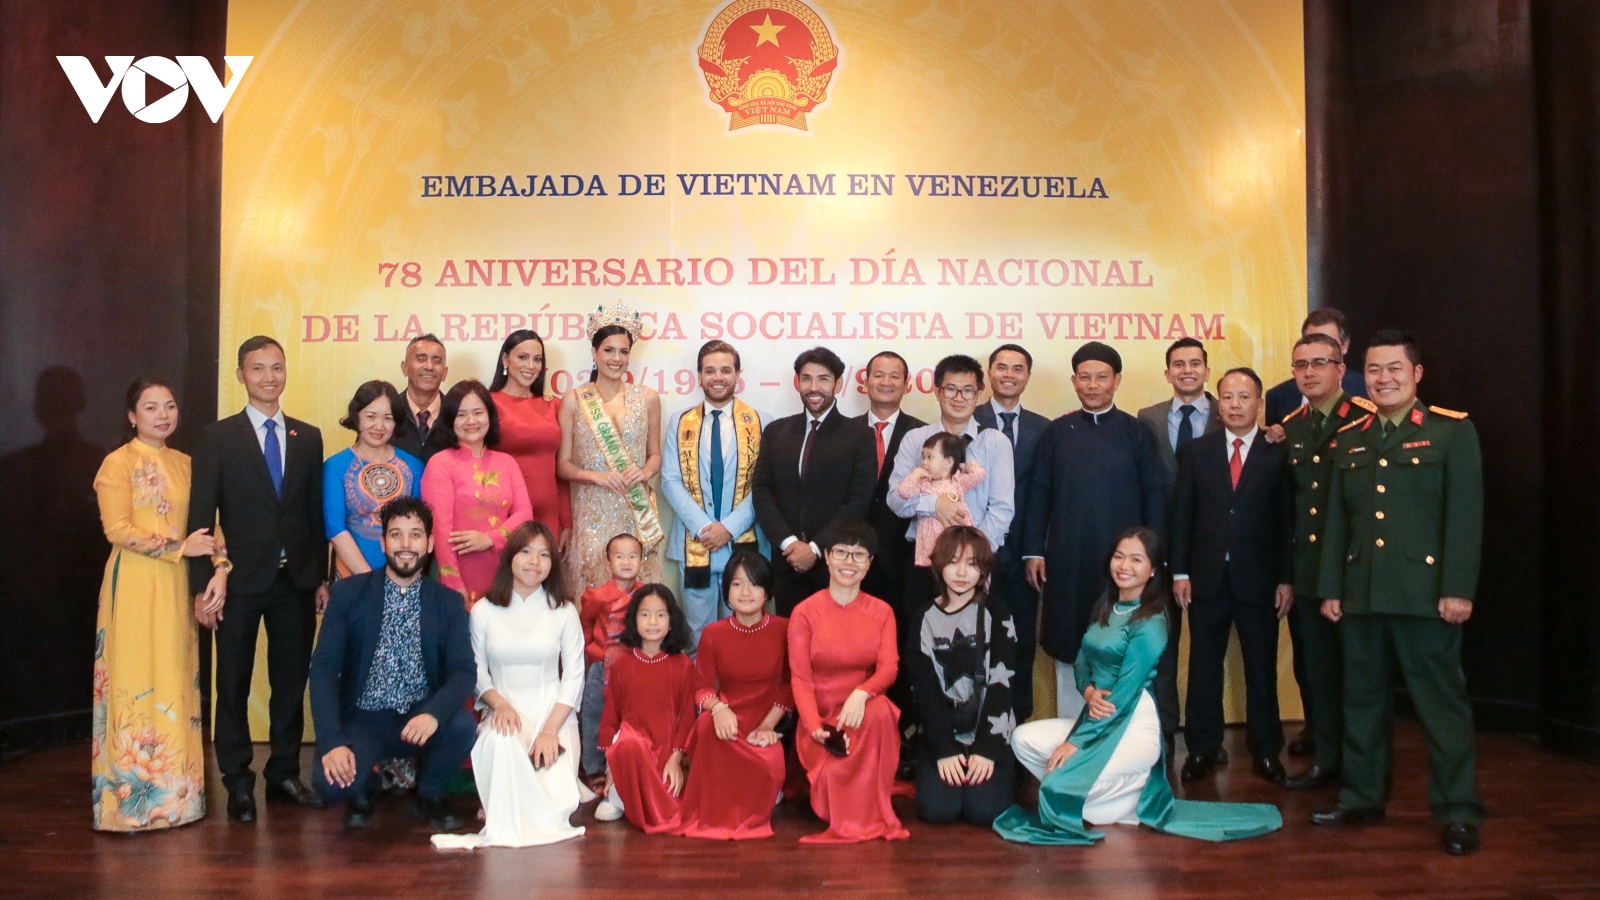 78 năm Quốc khánh Việt Nam: Độc lập dân tộc gắn liền với Chủ nghĩa xã hội